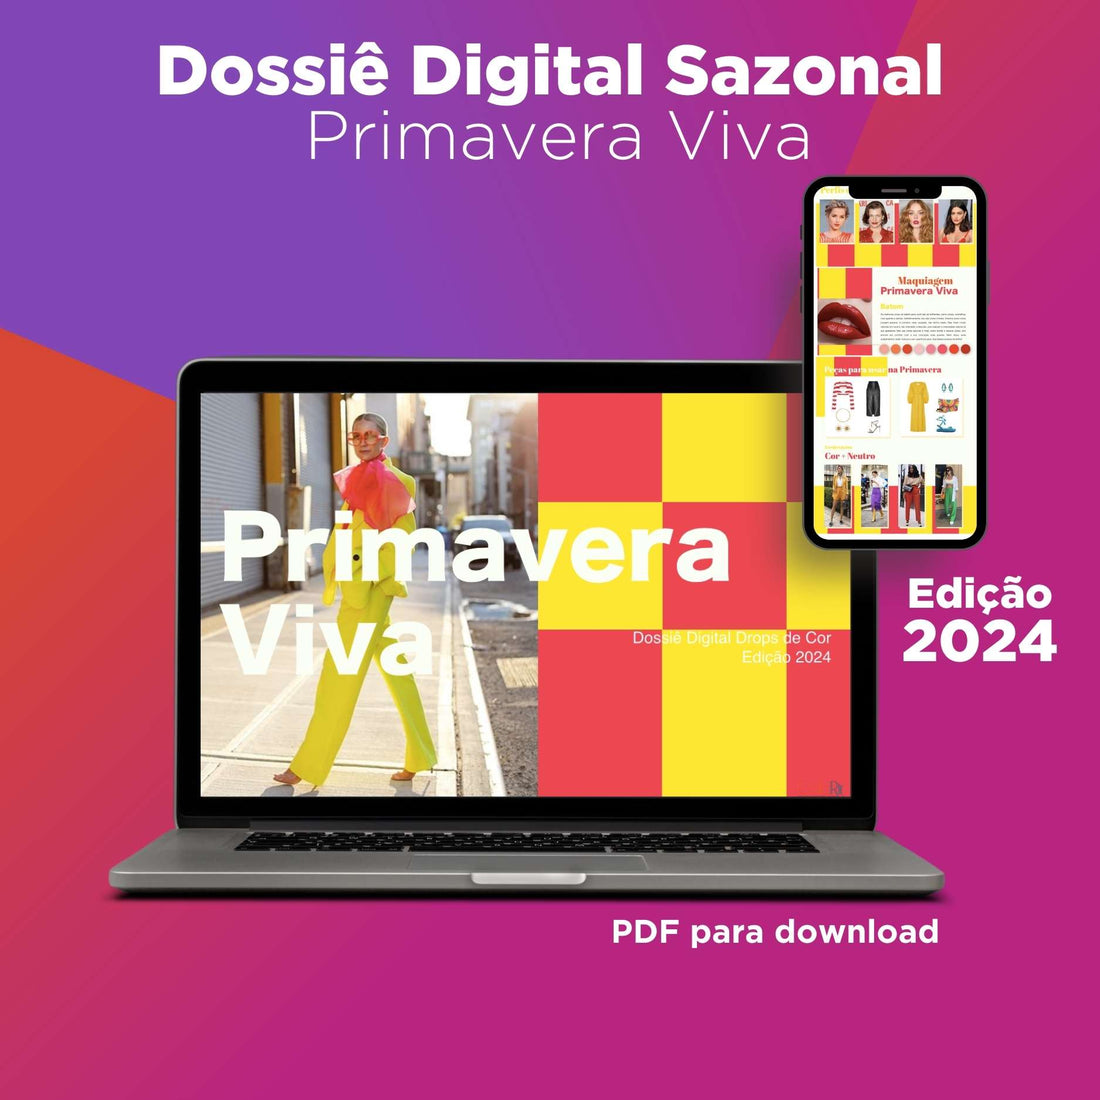 Dossier Digital de Temporada - Primavera Viva - Edición 2024